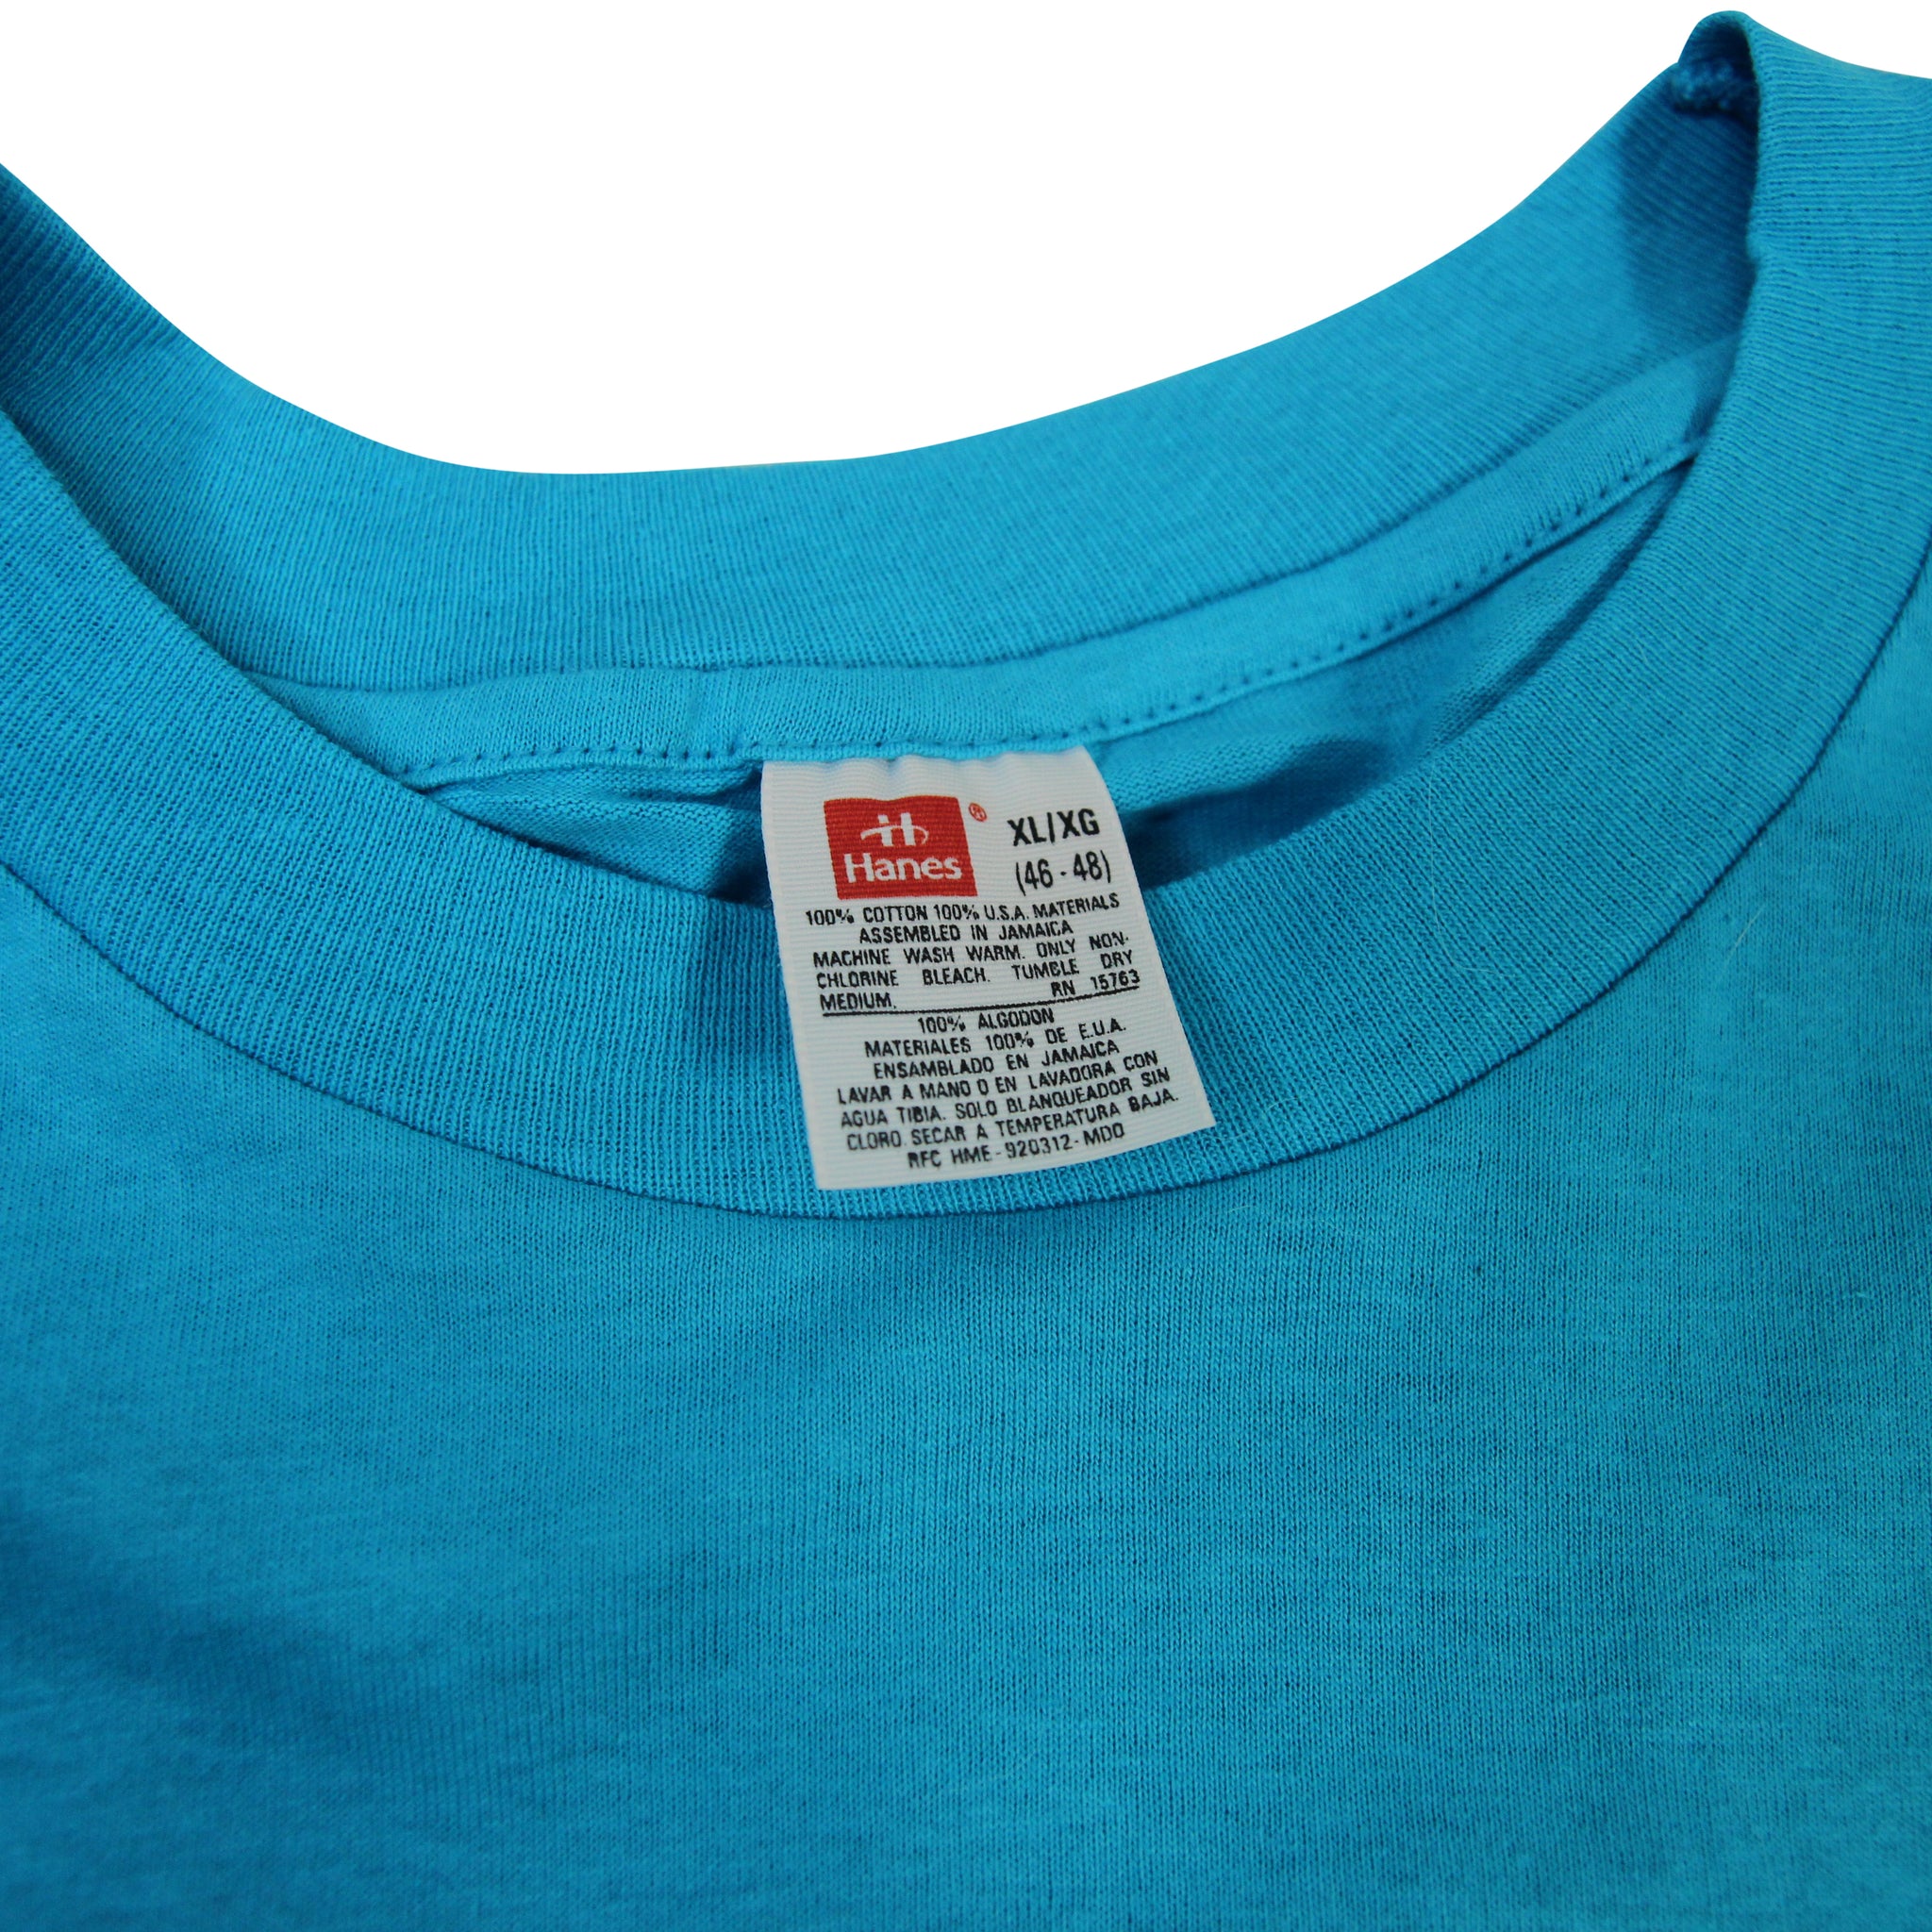 Men's Shirt by Hanes Black Shirt XL/XG RN 15763